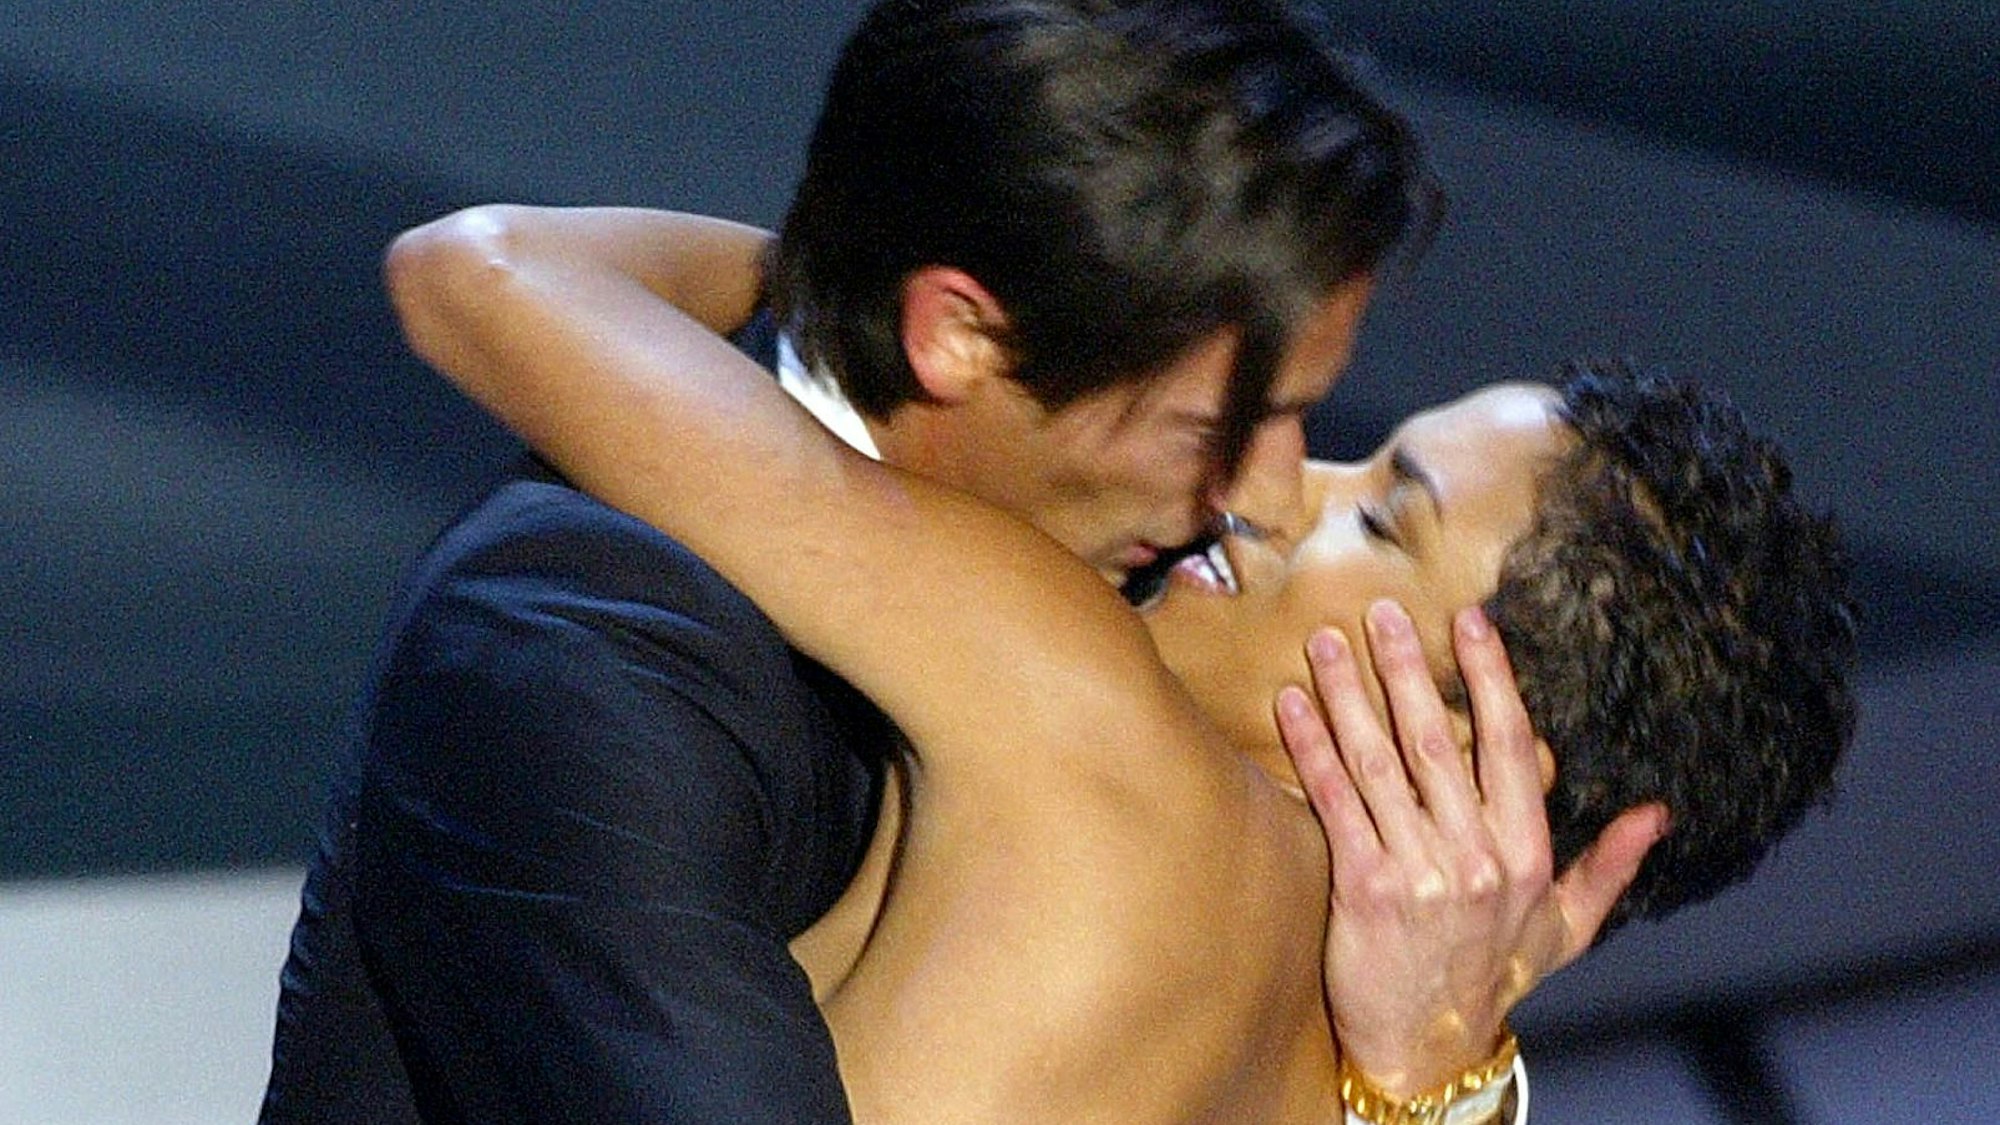 Der Schauspieler Adrien Brody küsst die Moderatorin Halle Berry, als er seinen Oscar für die beste schauspielerische Leistung in einer Hauptrolle entgegennimmt.